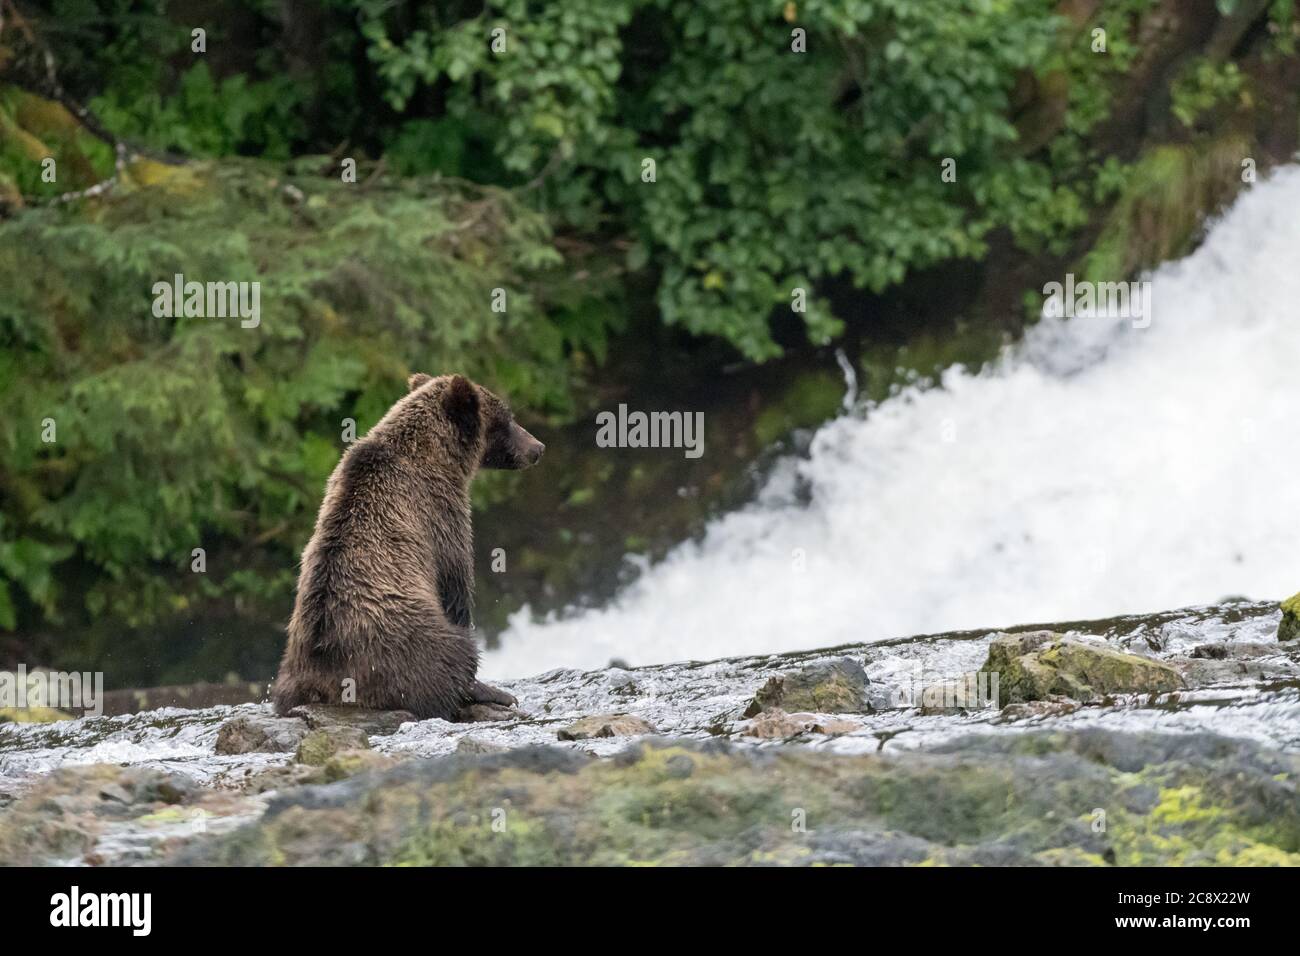 Un oso grizzly (Ursus arctos horribilis) sentado frente a una cascada en el sureste de Alaska, EE.UU. Foto de stock